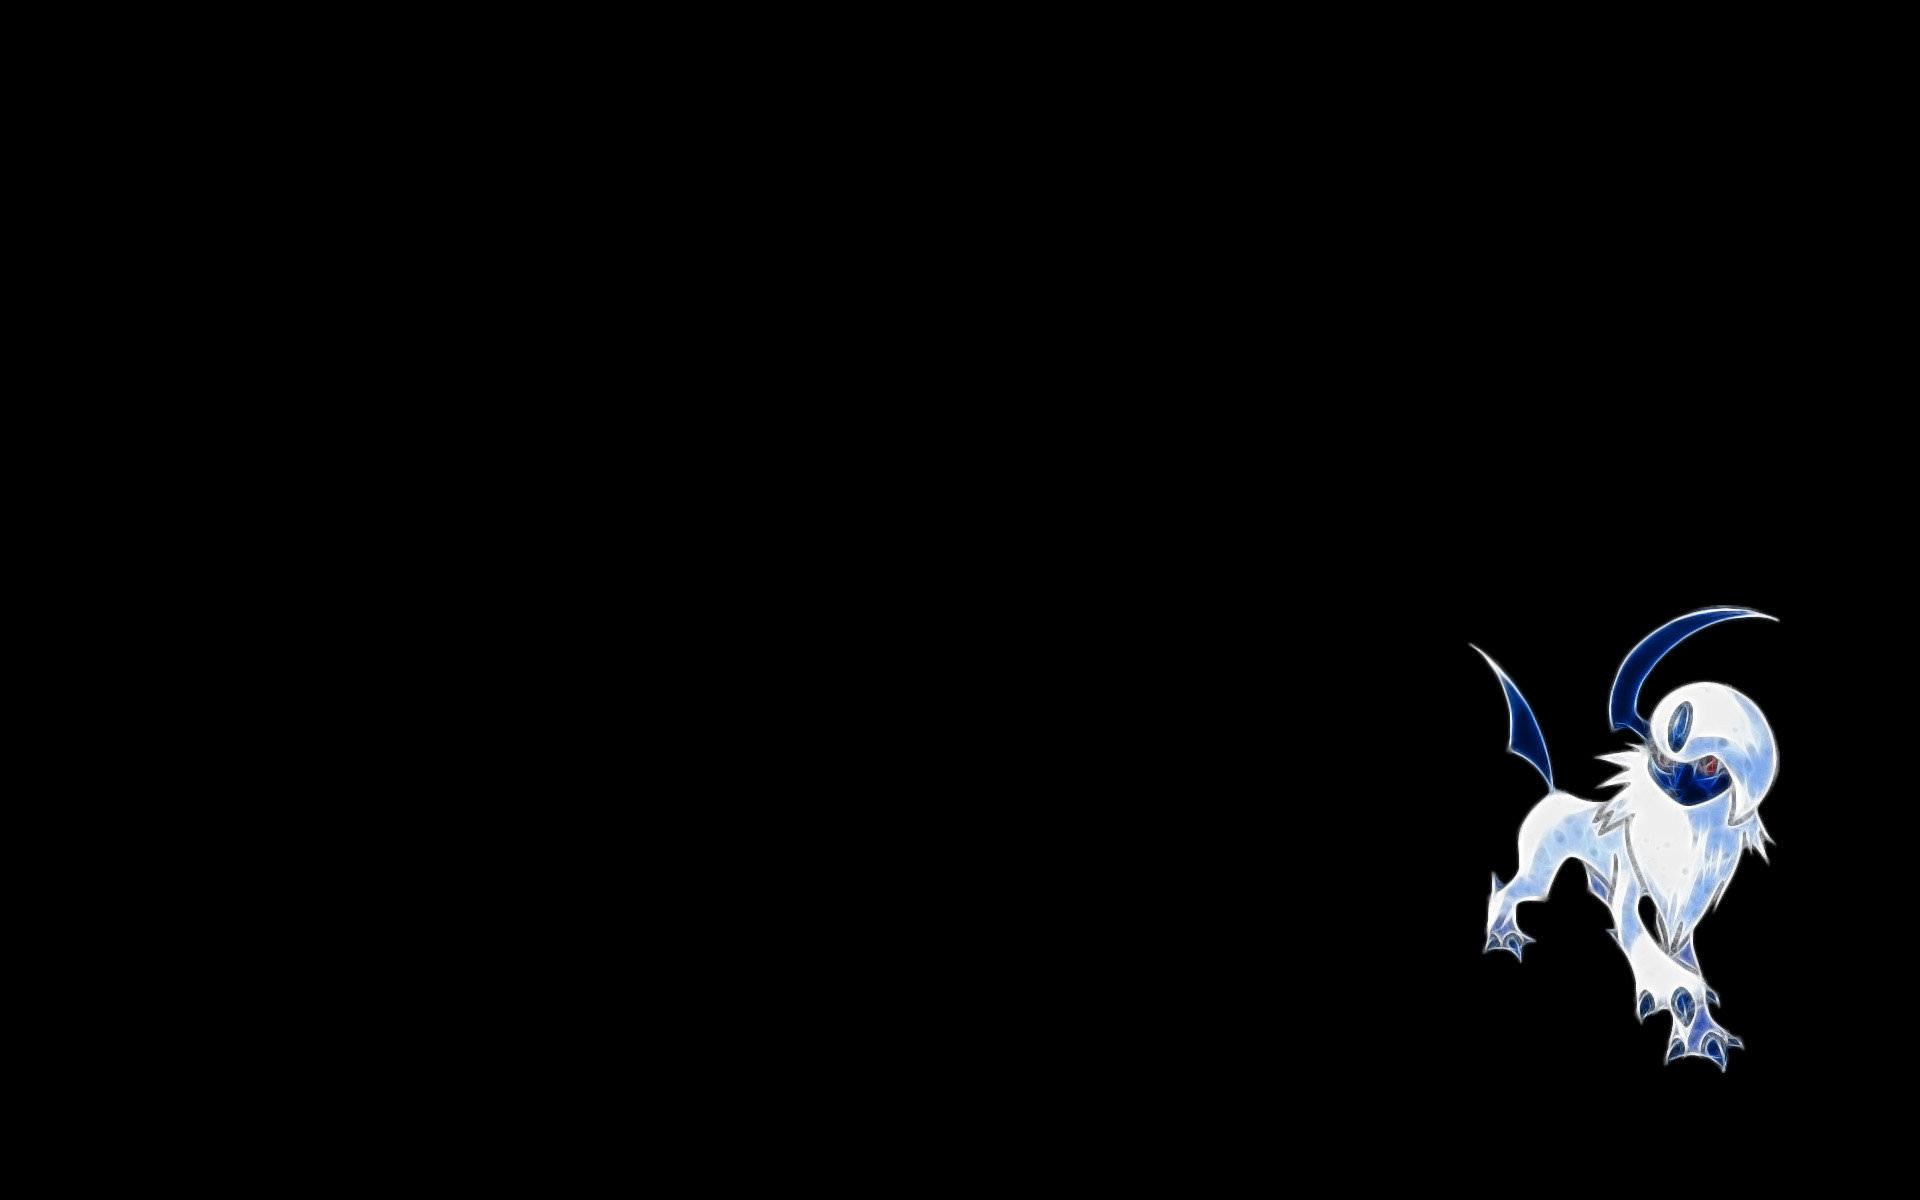 Absol (Pokemon) wallpaper HD for desktop background